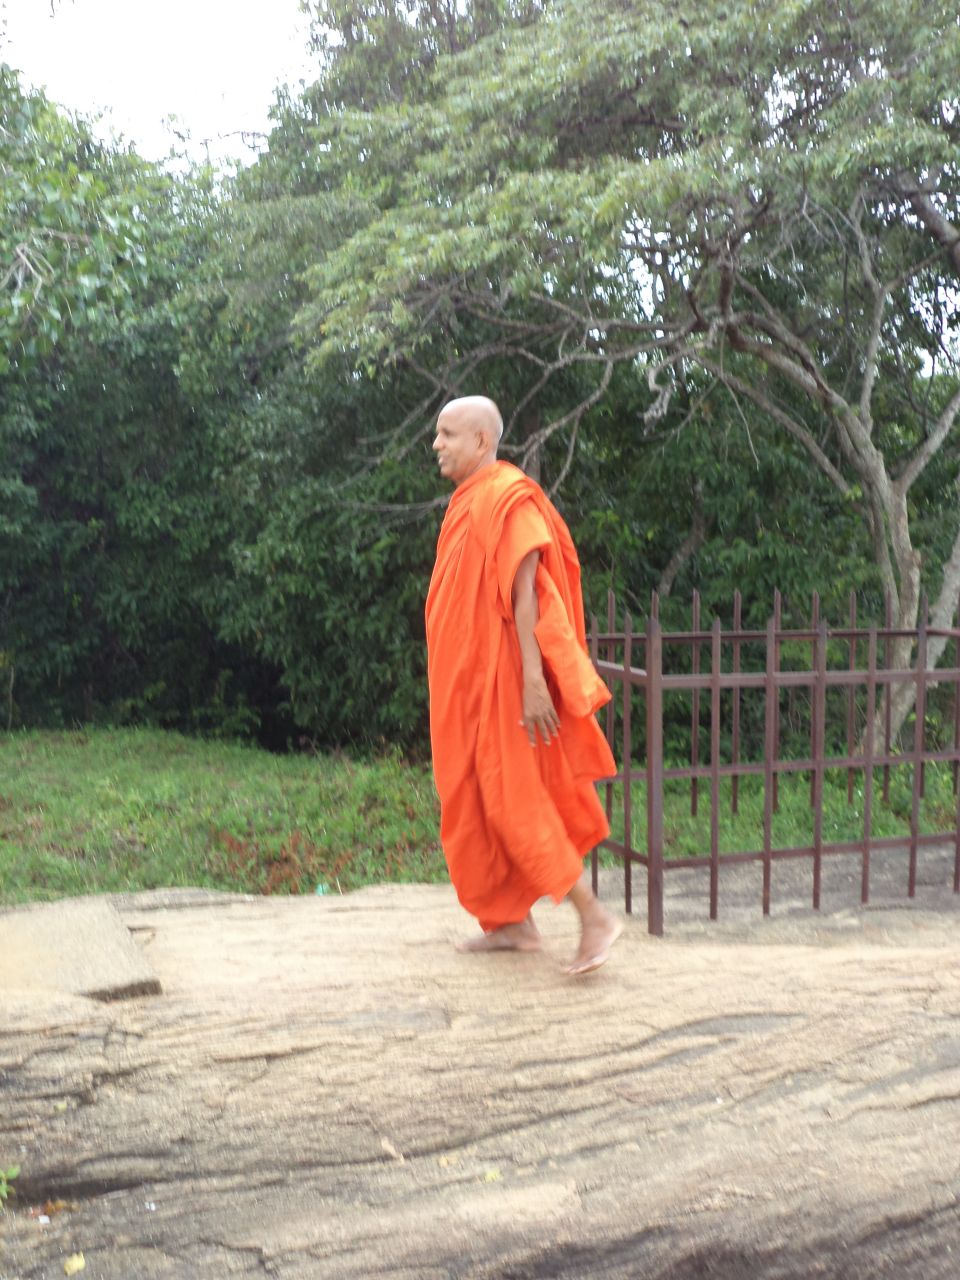 местный монах - Шри-Ланка 2017